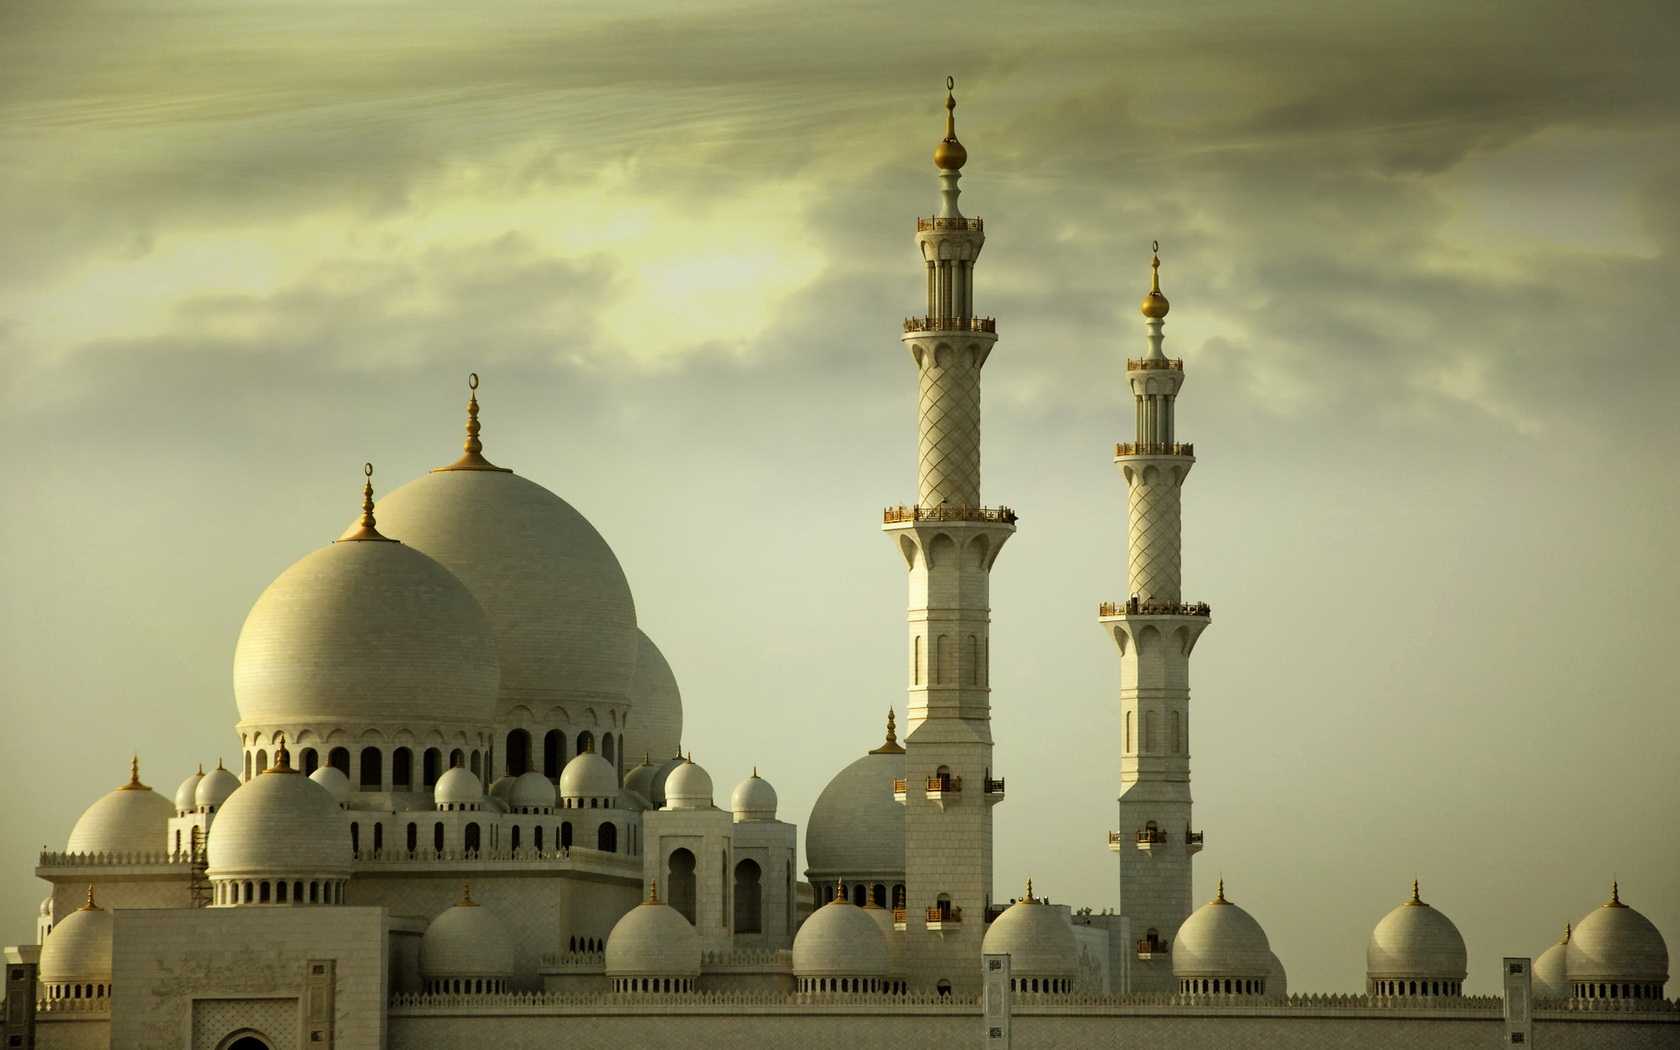 Sheikh Zayed Grand Mosque HD Wallpaper For Desktop